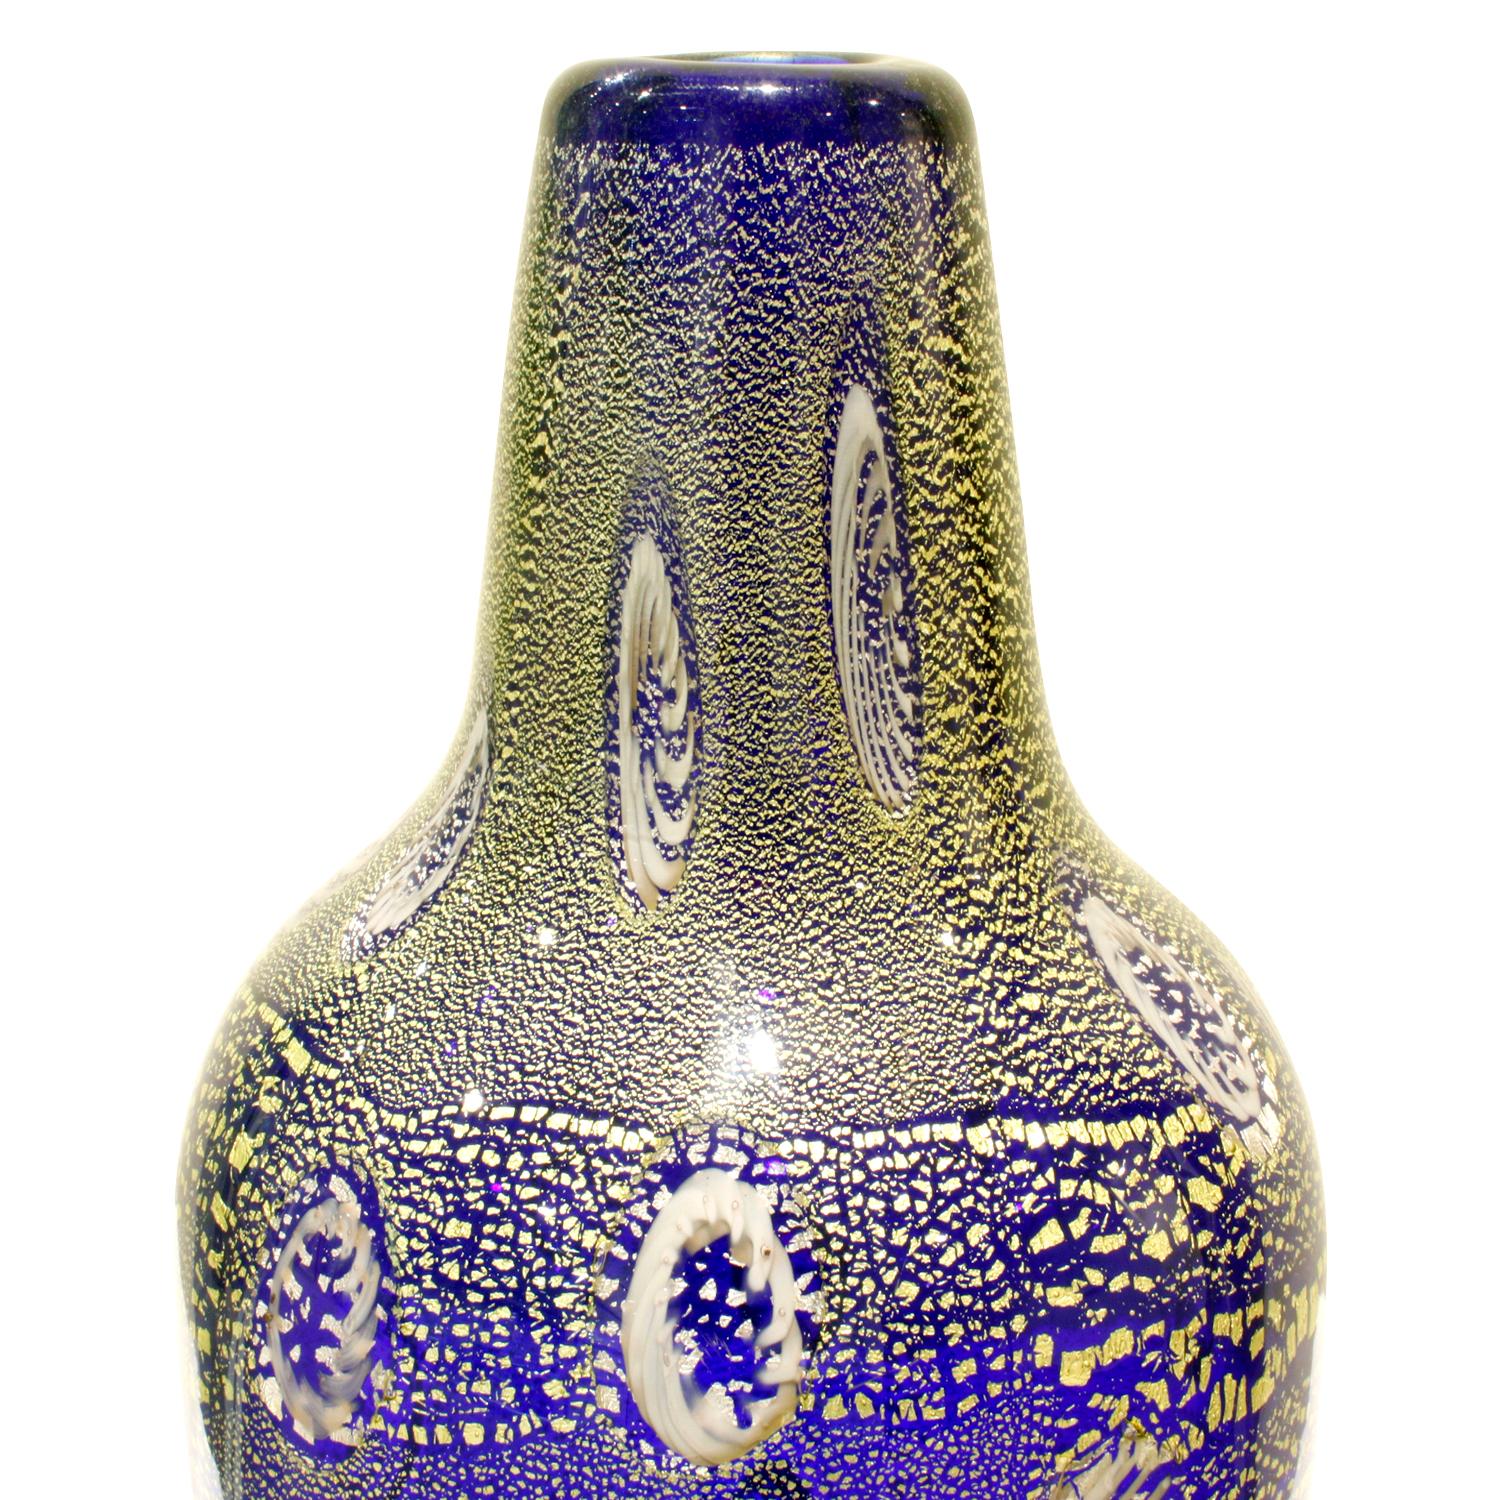 Vase aus mundgeblasenem blauem Glas mit Murrhinen und Goldfolie von Giulio Radi für Arte Vetraria Muranese (A.V.E.M.), Murano Italien, um 1950. Die Werke von Radi sind schön und selten. Die Goldfolie im Glas verleiht ihm eine juwelenartige